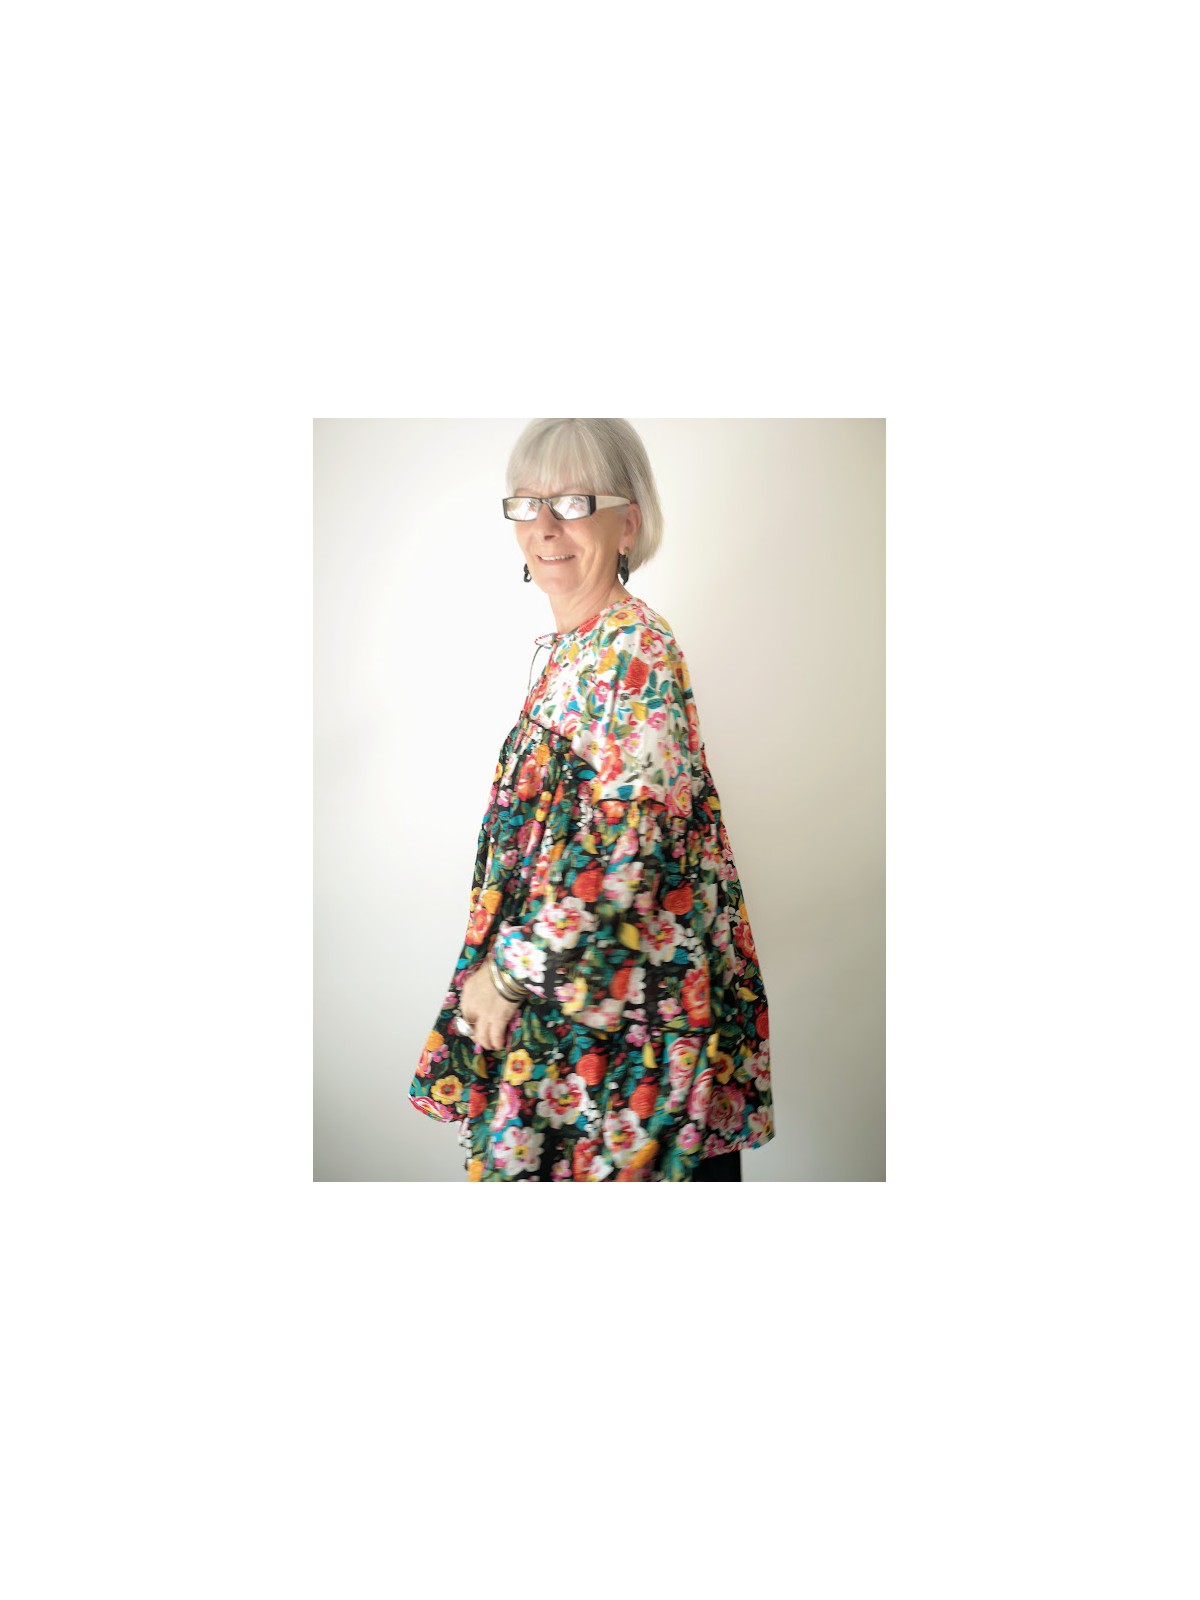 Blouse ample fleurie L'été de Jeanne l 2 vue de profil l Tilleulmenthe mode boutique de vêtements femme en ligne